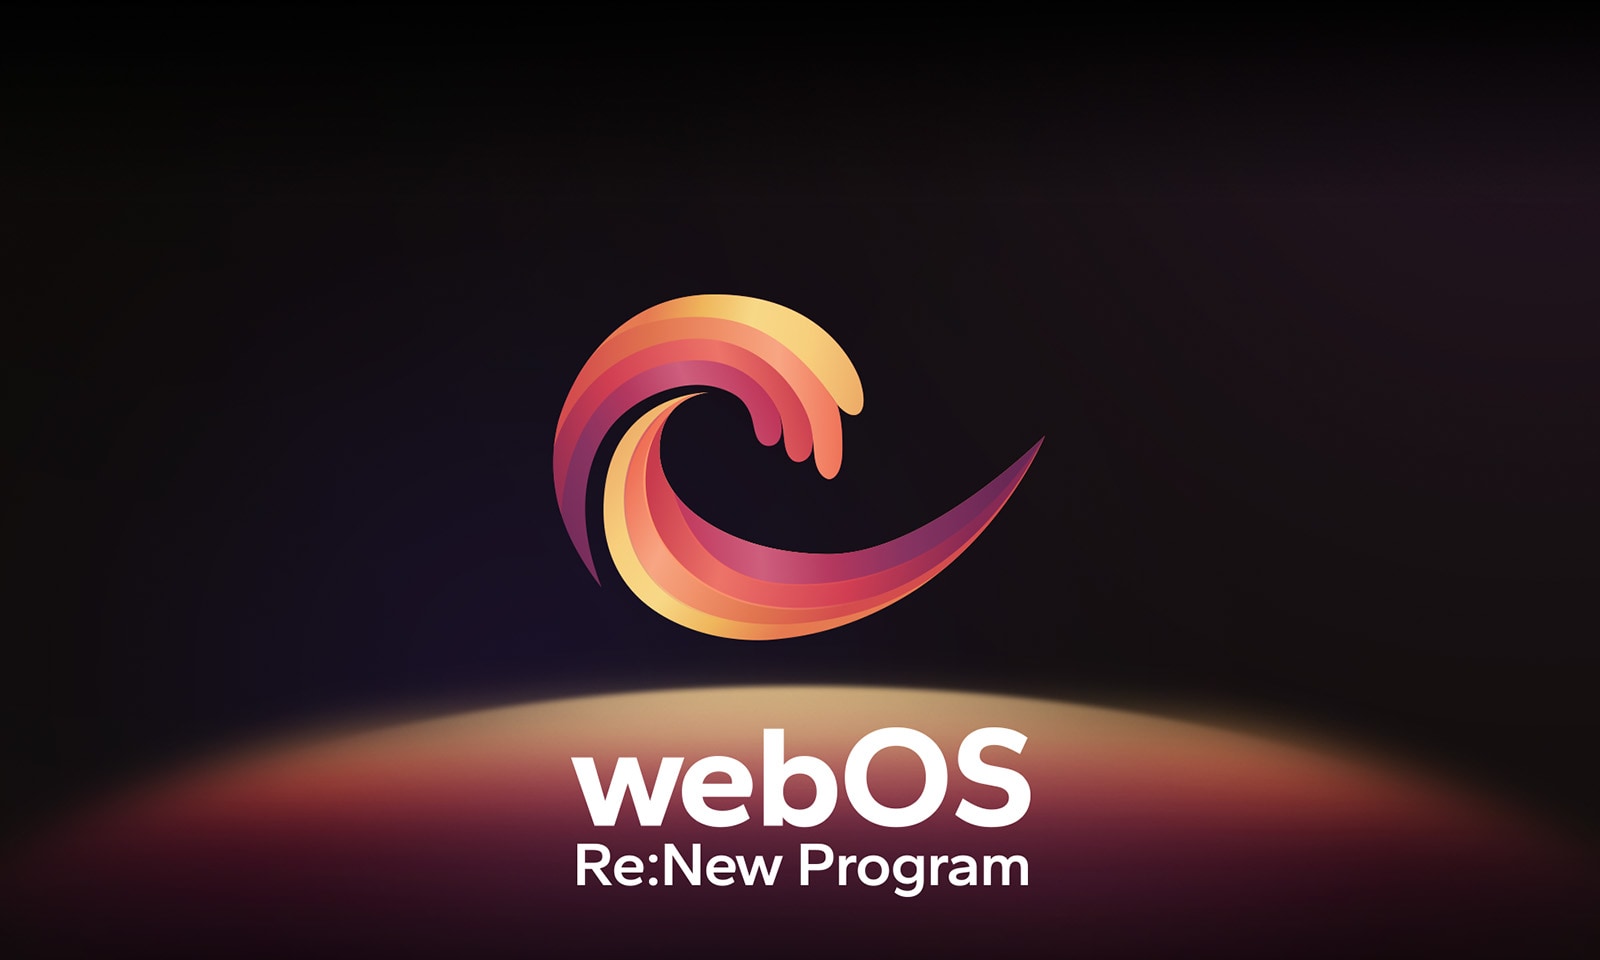 WebOS-logo leijuu keskellä mustalla pohjalla, ja alla oleva tila on valaistu logon väreillä punainen, oranssi ja keltainen. Logon alla on teksti "webOS Re:New Program".